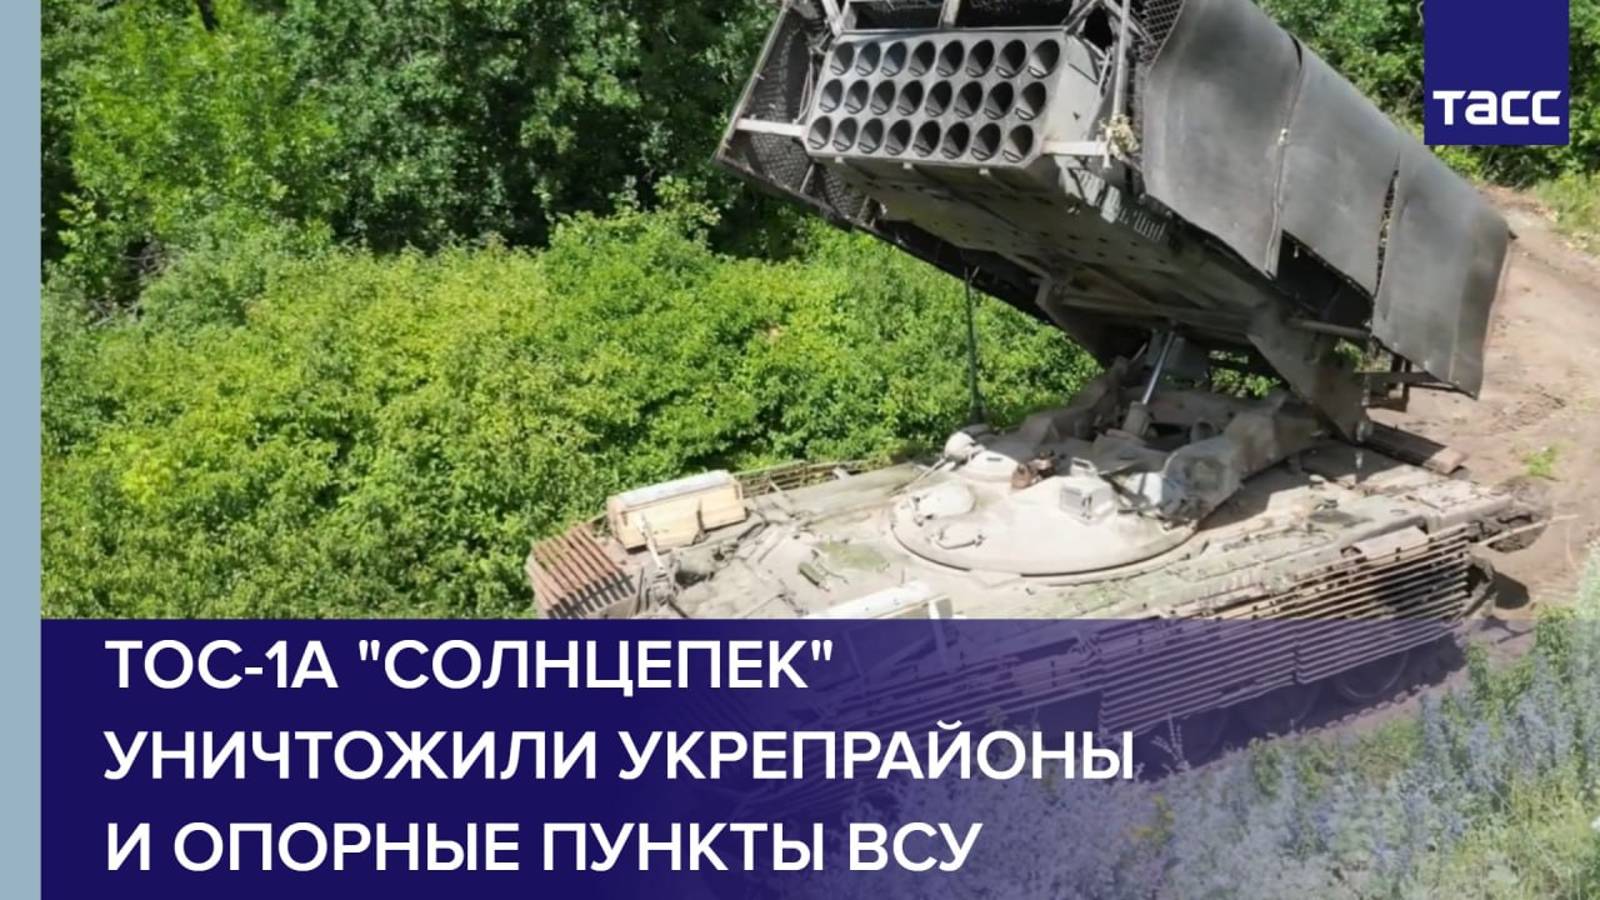 ТОС-1А "Солнцепек" Восточной группировки ВС РФ уничтожили укрепрайоны и опорные пункты ВСУ